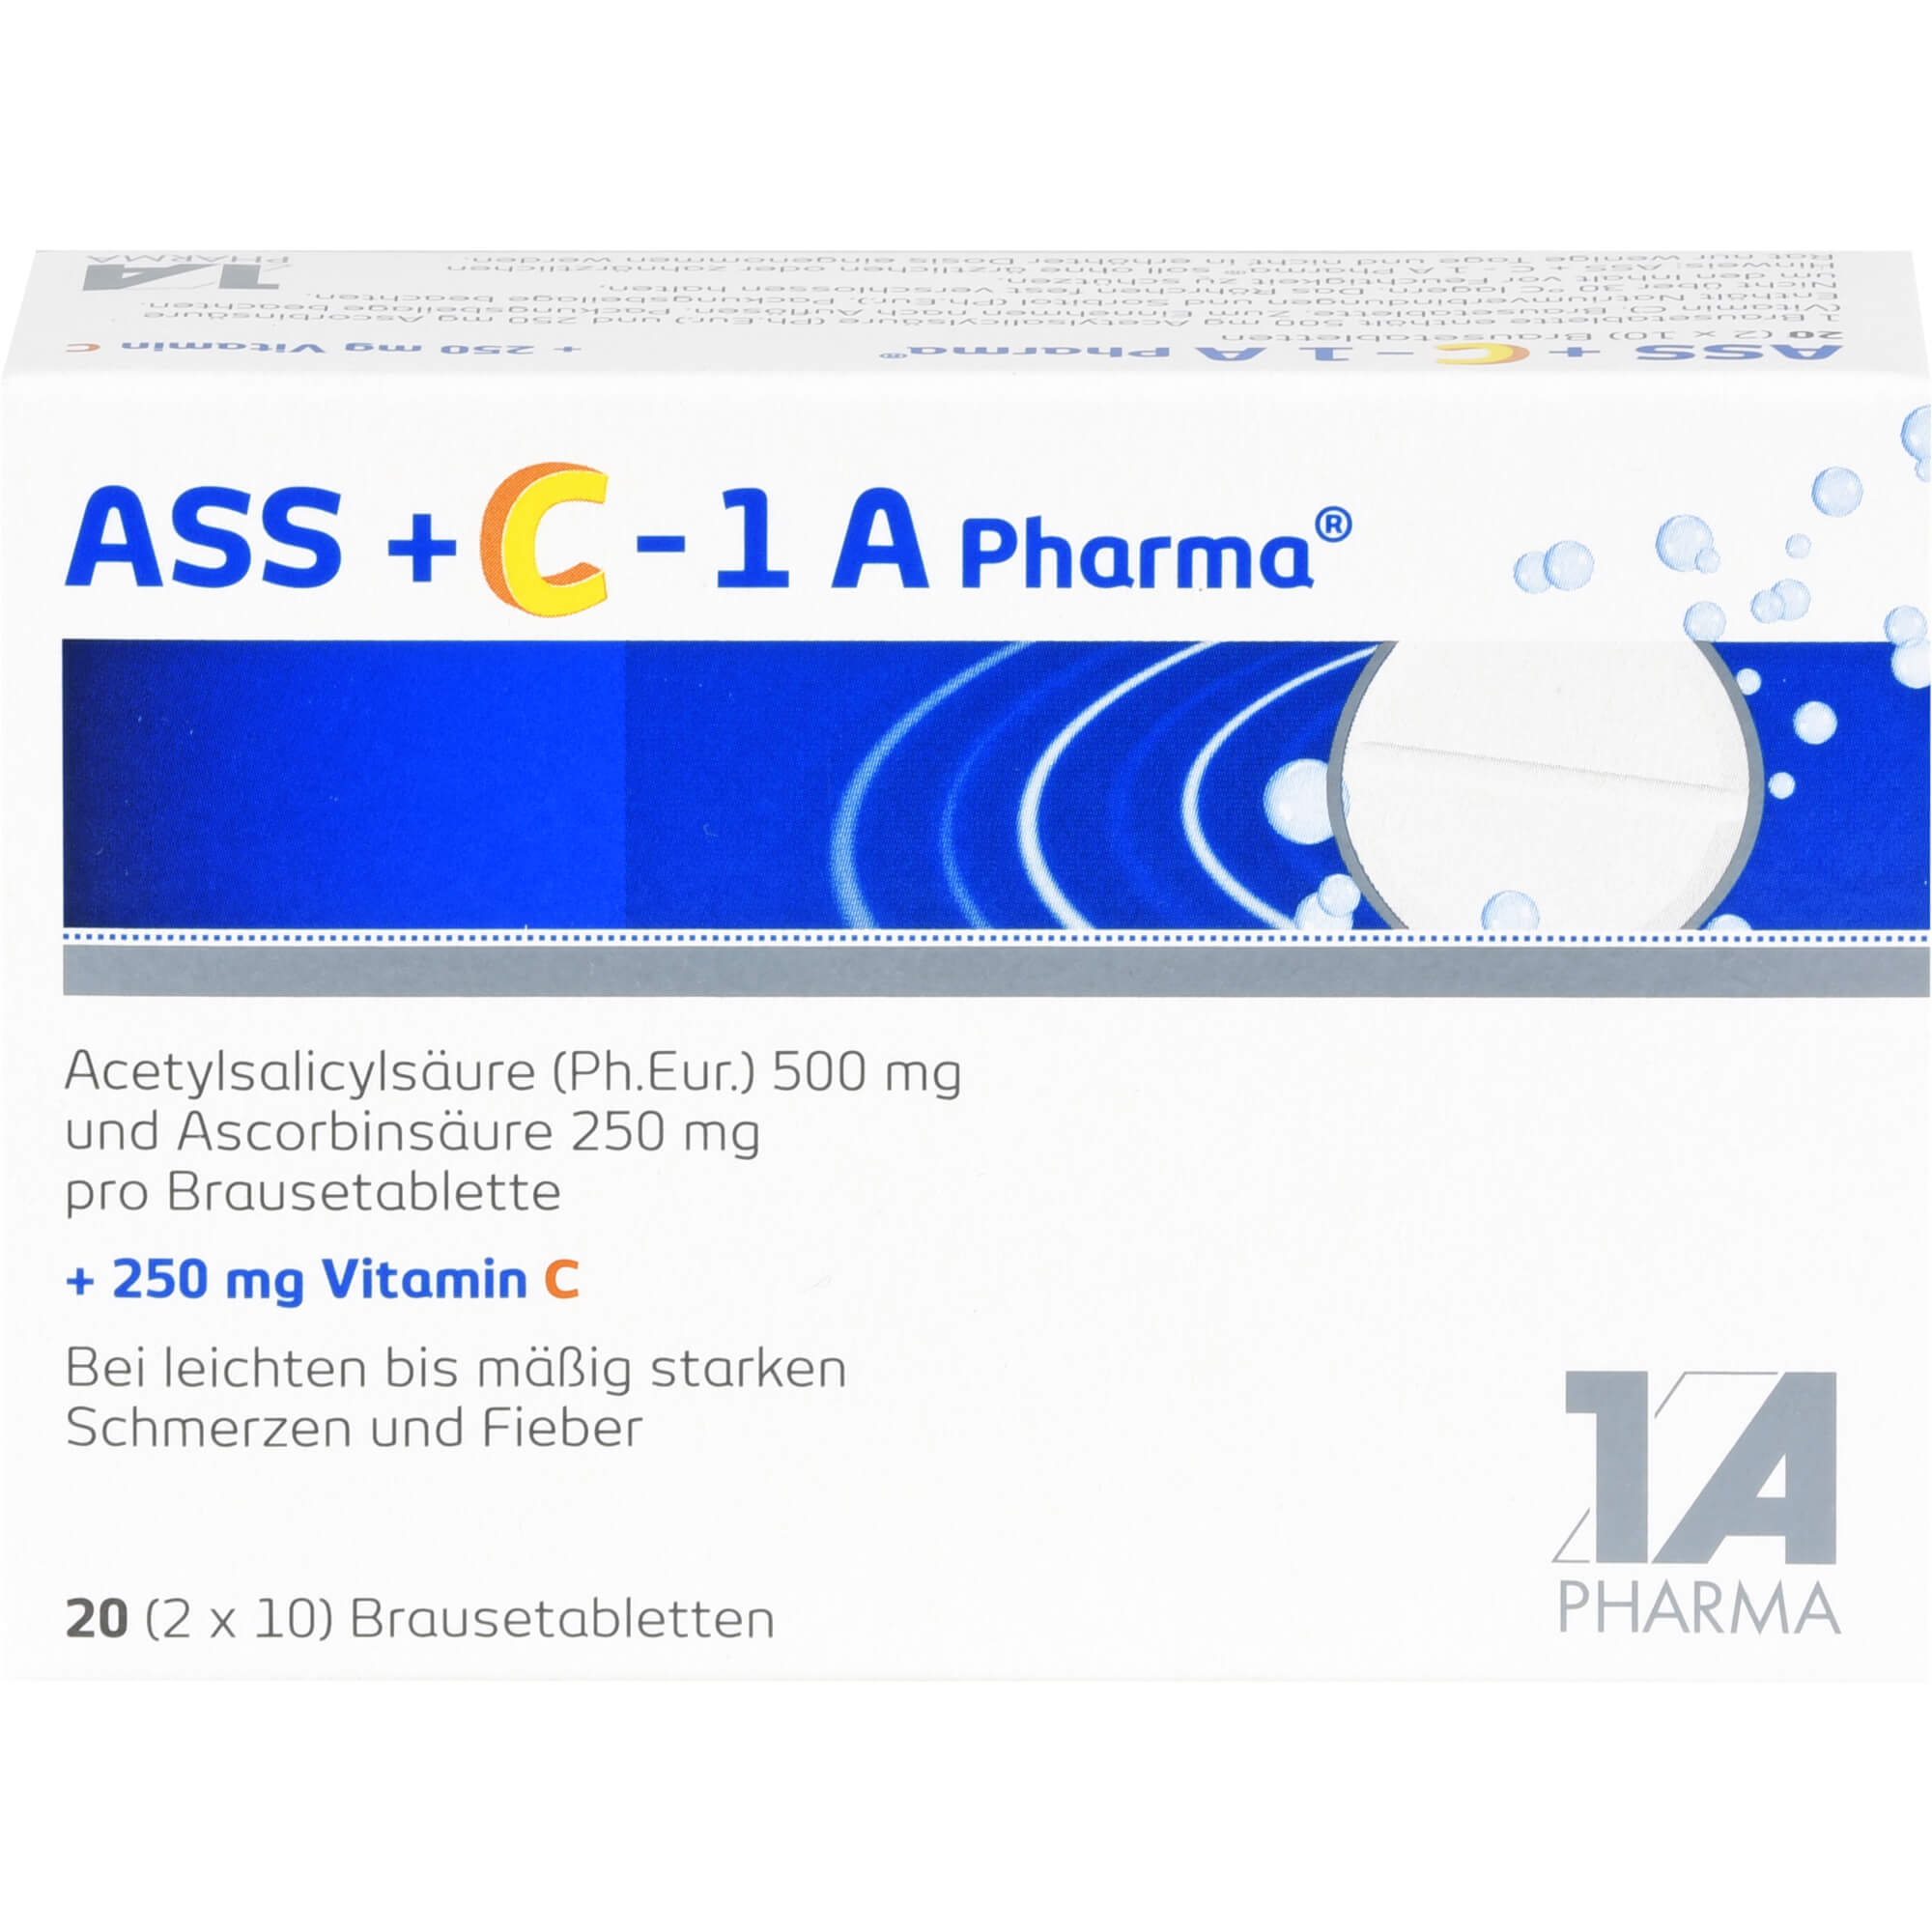 ASS-C-1A-Pharma-Brausetabletten